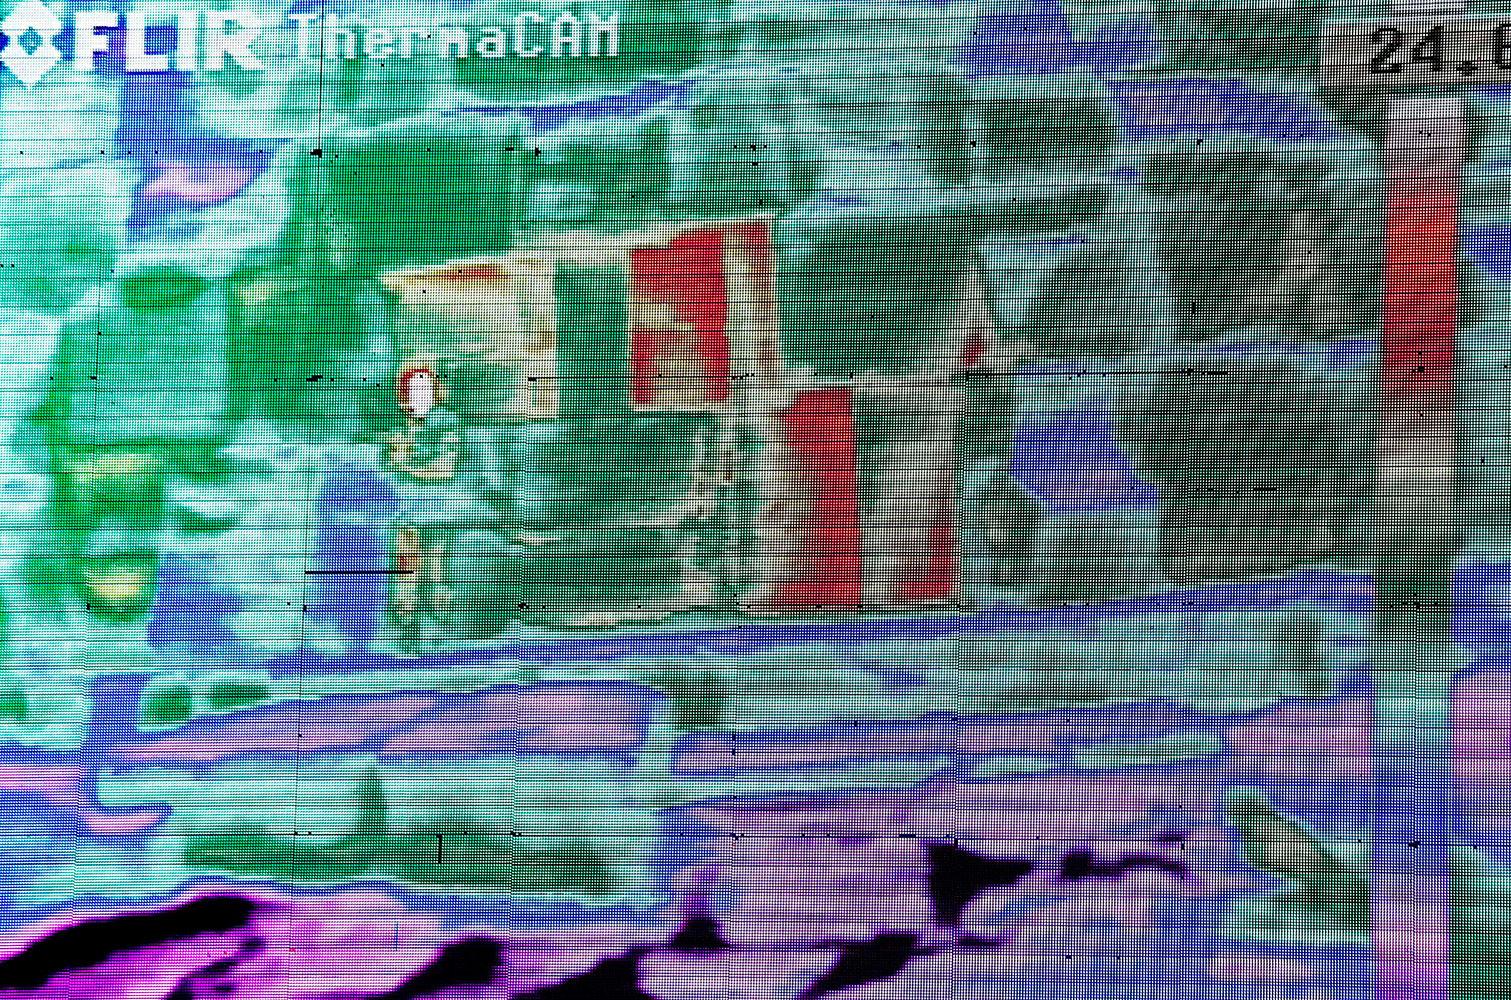 Keopspyramiden filmad med en värmekamera. De olika färgerna visar på temperaturavvikelser.